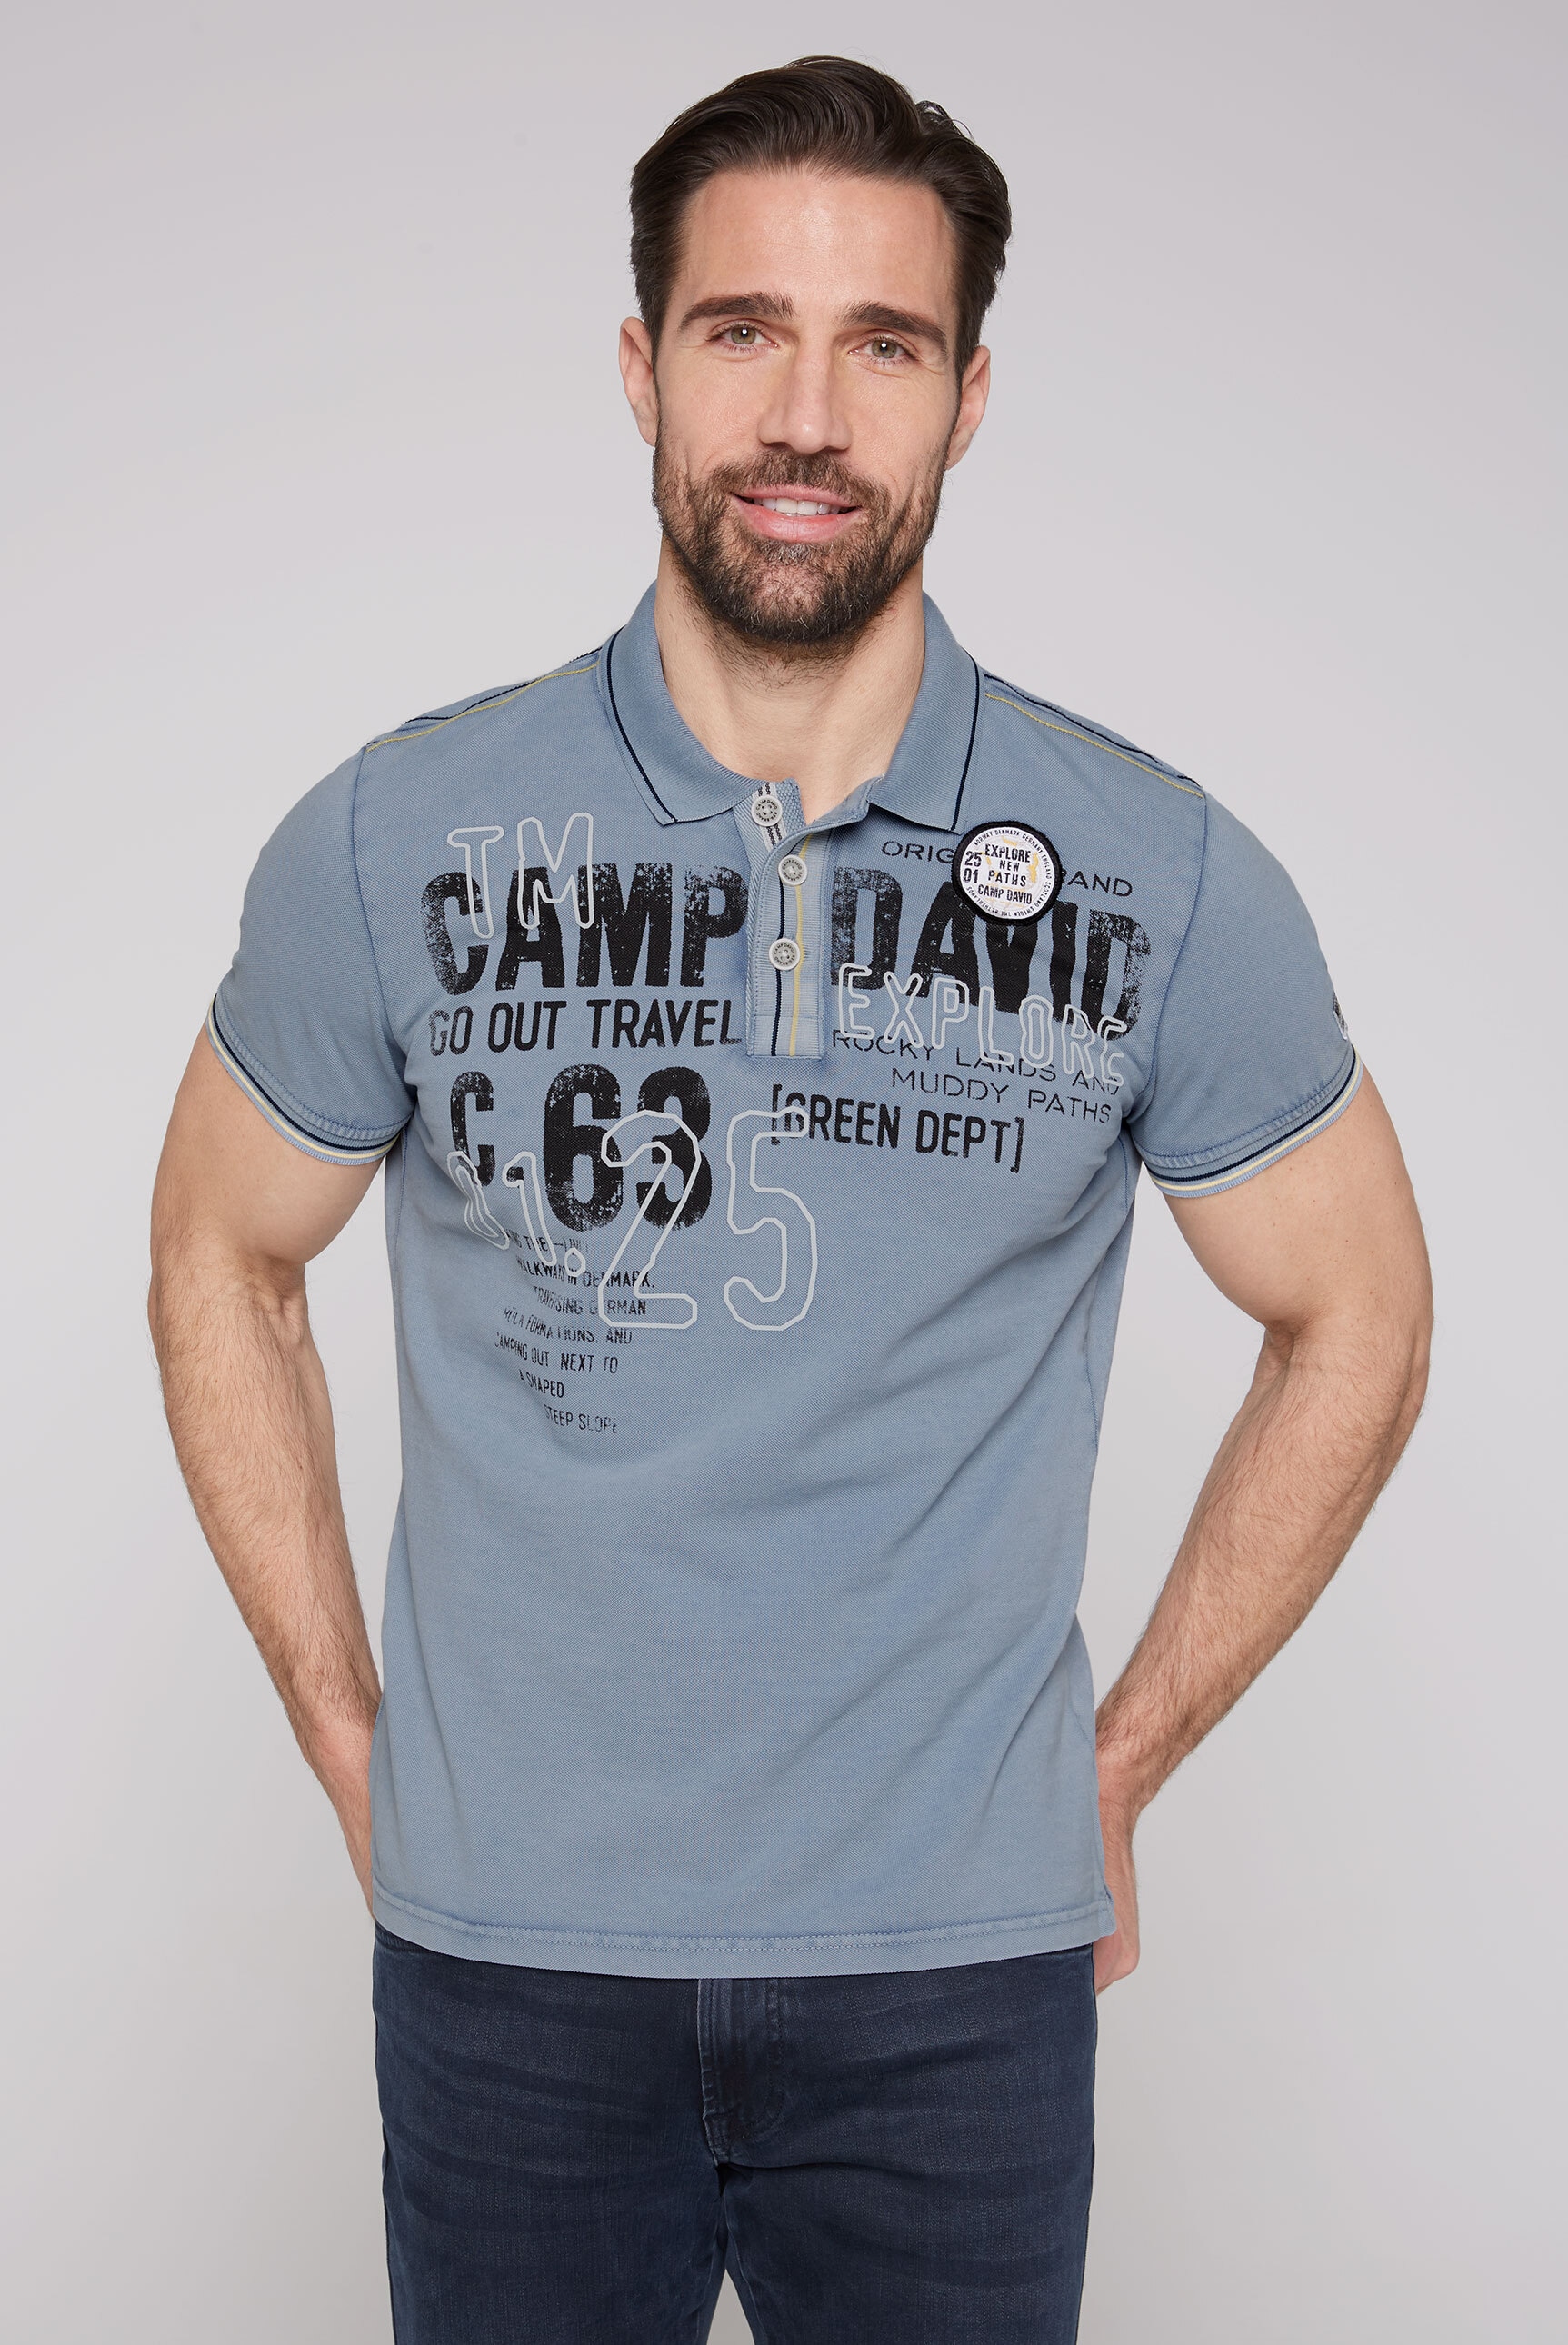 CAMP DAVID Polo marškinėliai